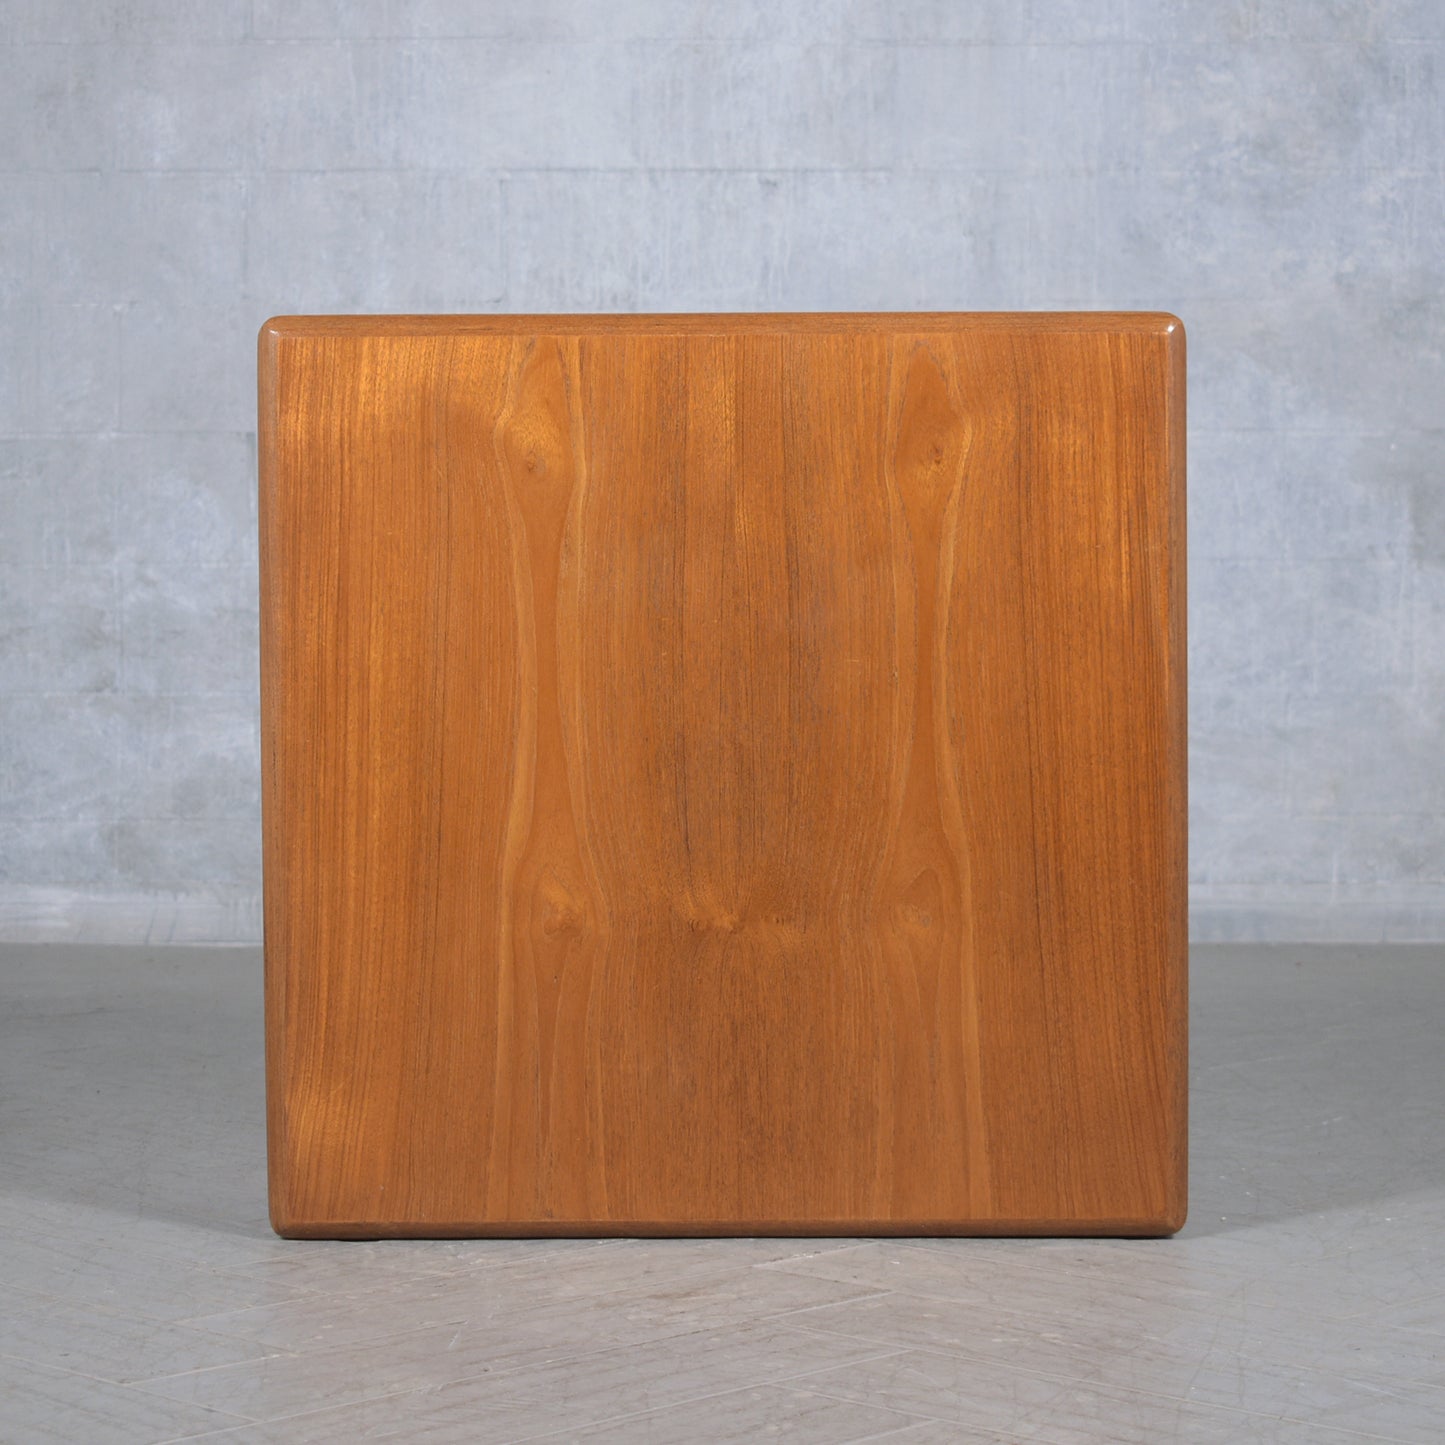 Vintage 1960s Teak Wood Waterfall Side Table - Fully Restored and Sleek Design